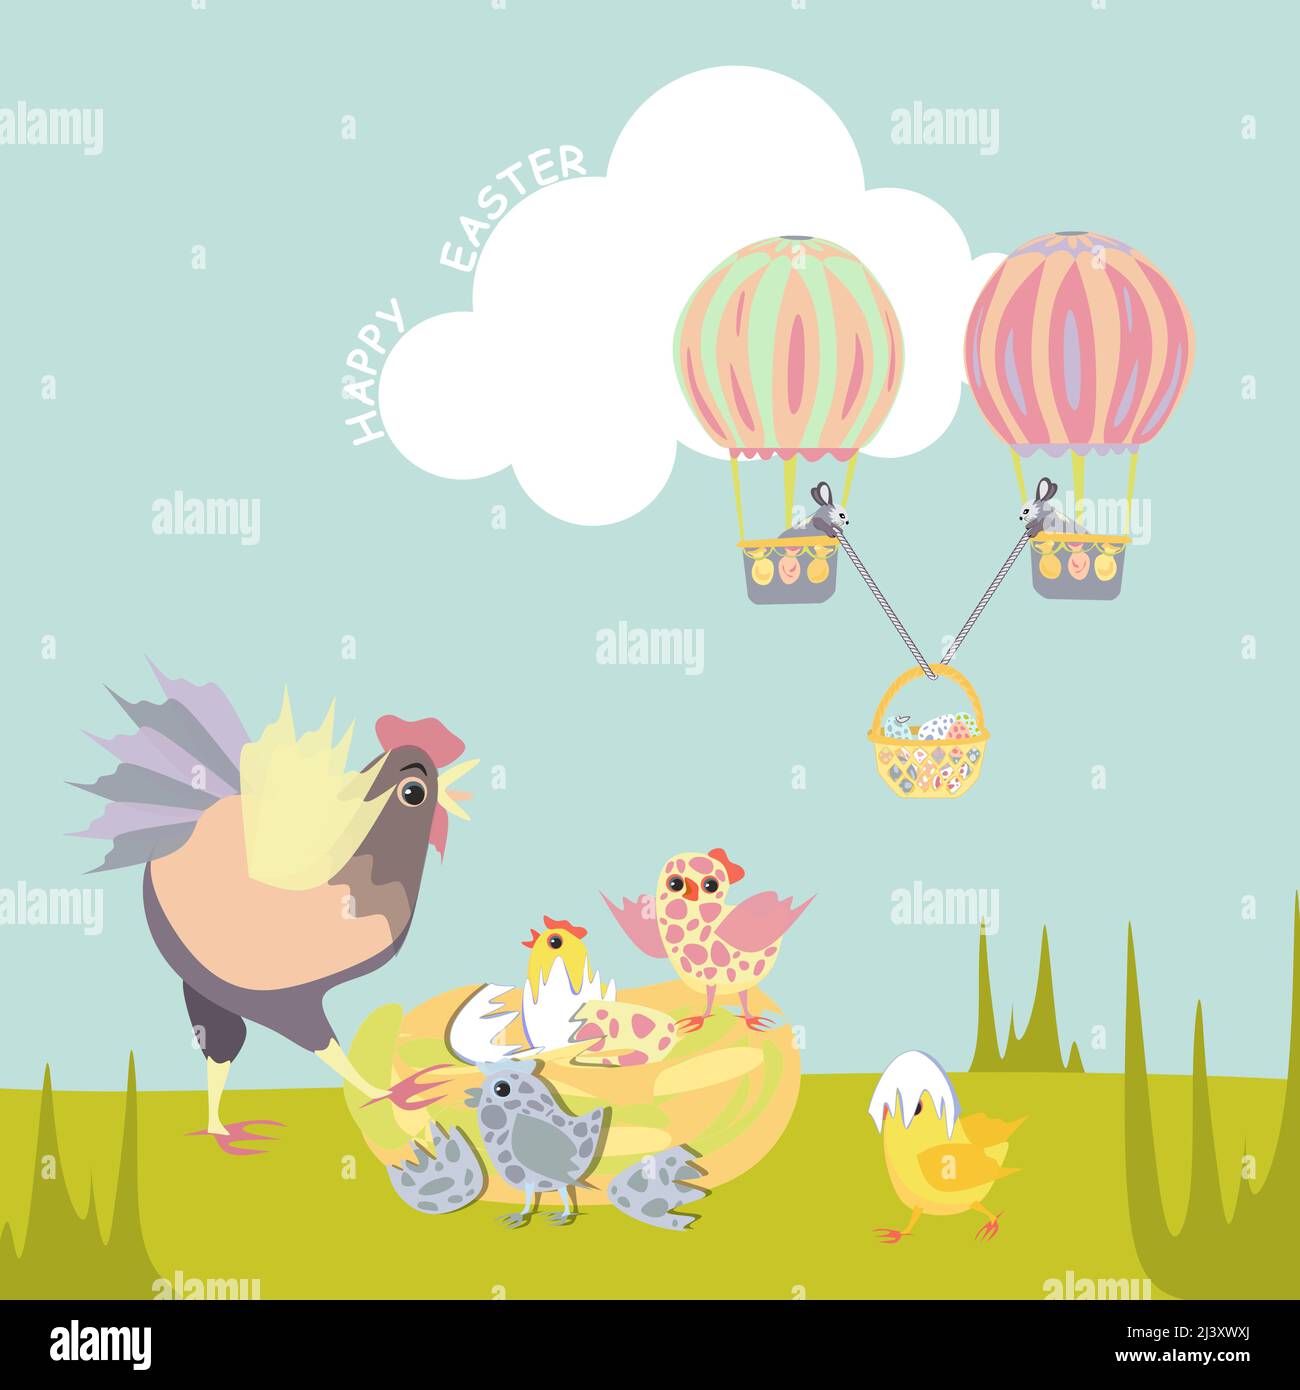 Les lapins de Pâques volent sur des ballons d'air avec des œufs de cannelle. La poule est surprise qu'elle ait éclos des poussins tachetés colorés. Joyeux Pâques vecteur coupe isolée Illustration de Vecteur